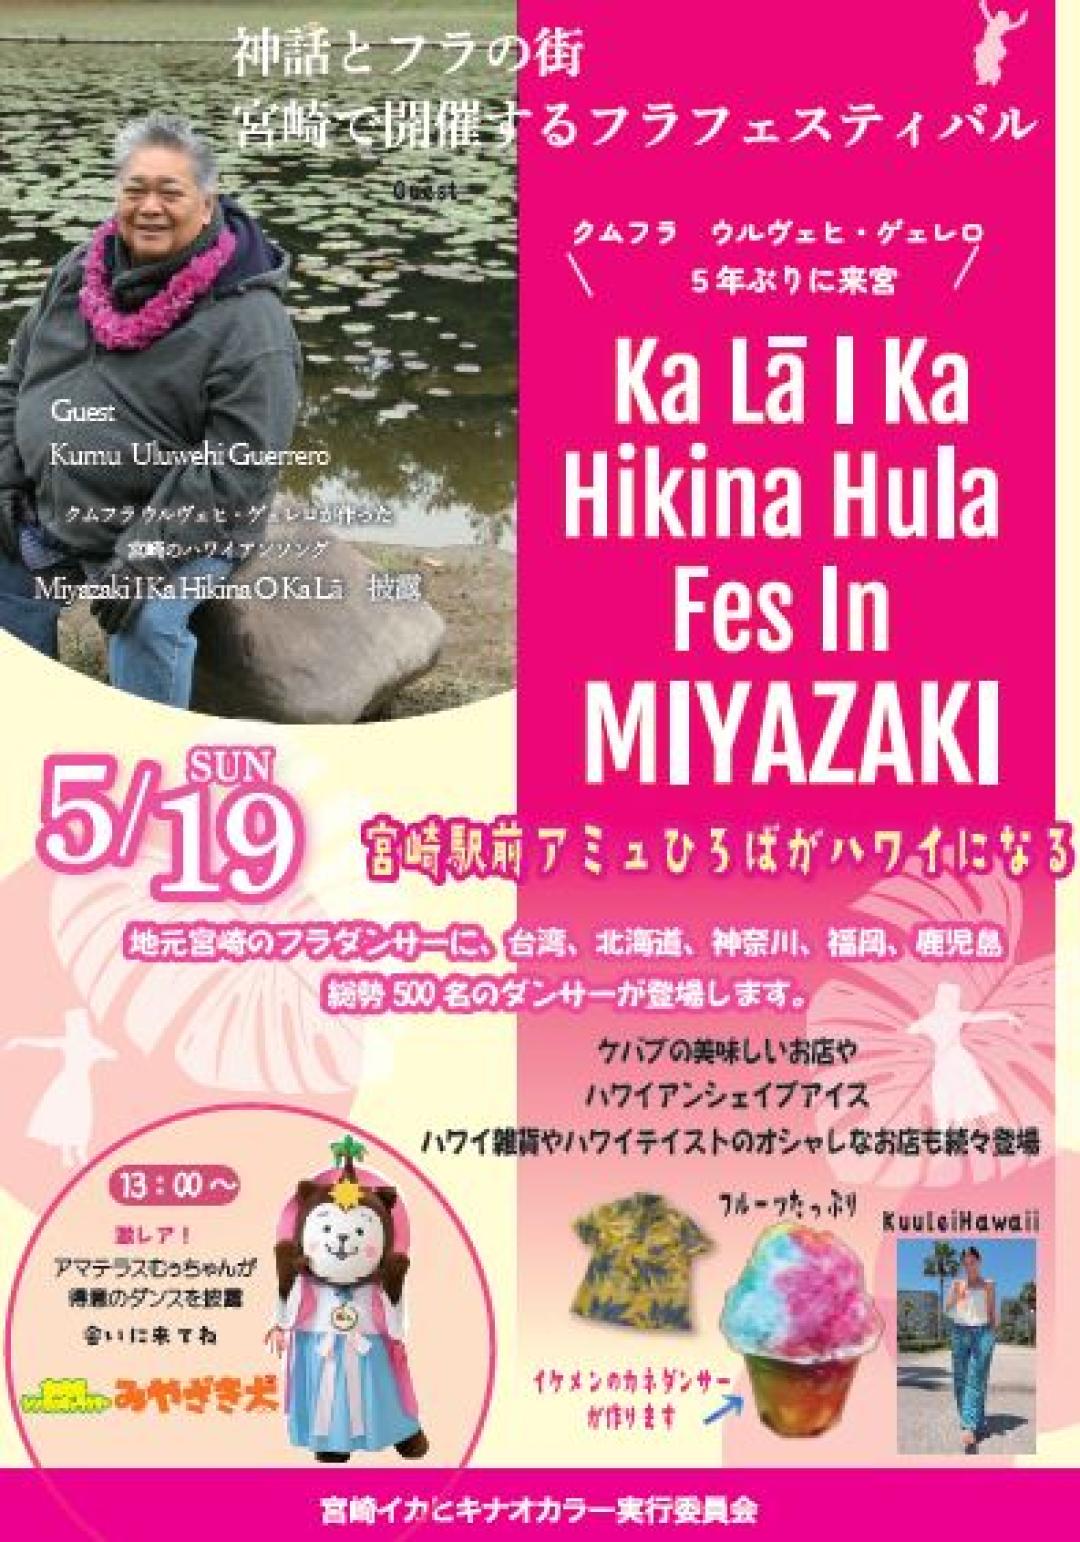 宮崎市イベント アミュプラザみやざき 第4回 Ka La l Ka Hikina Hula Fes In MIYAZAKI 画像4